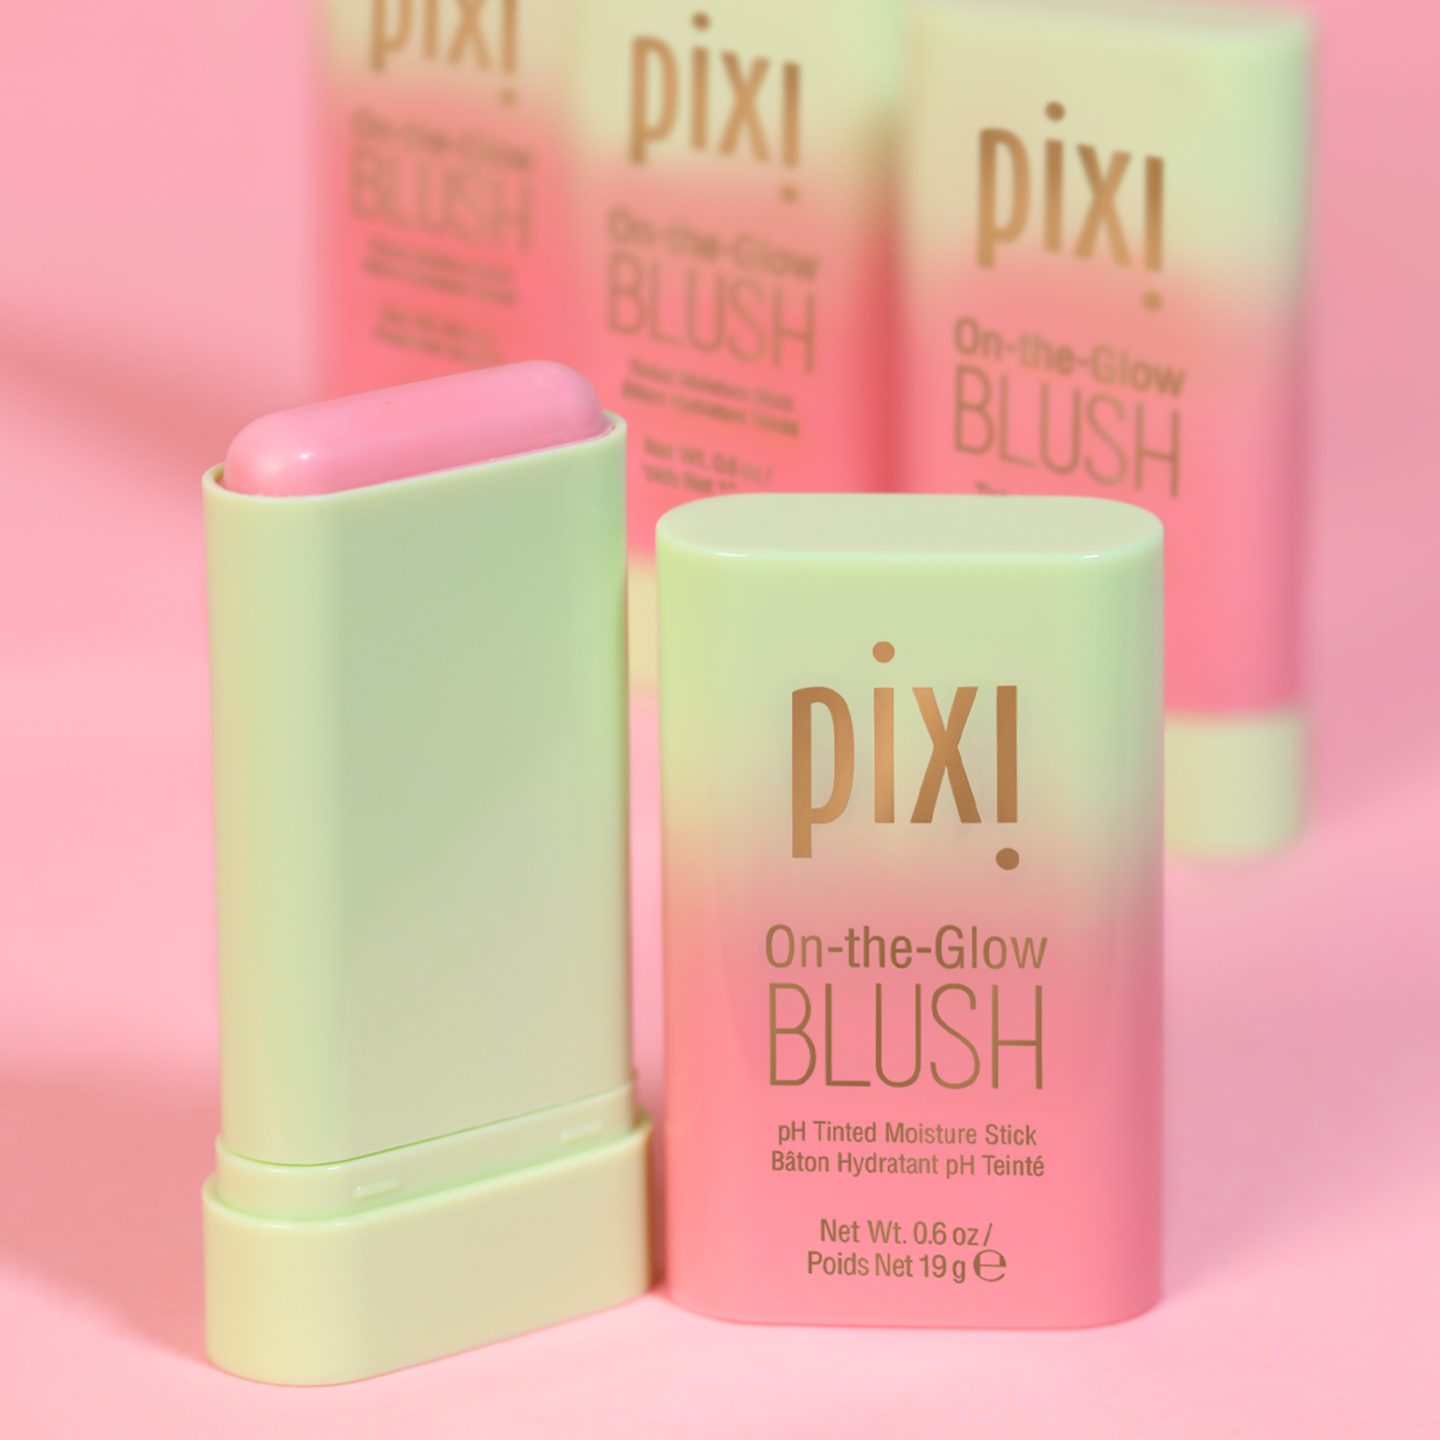 Pixi On-the-Glow Blush - Cheektone